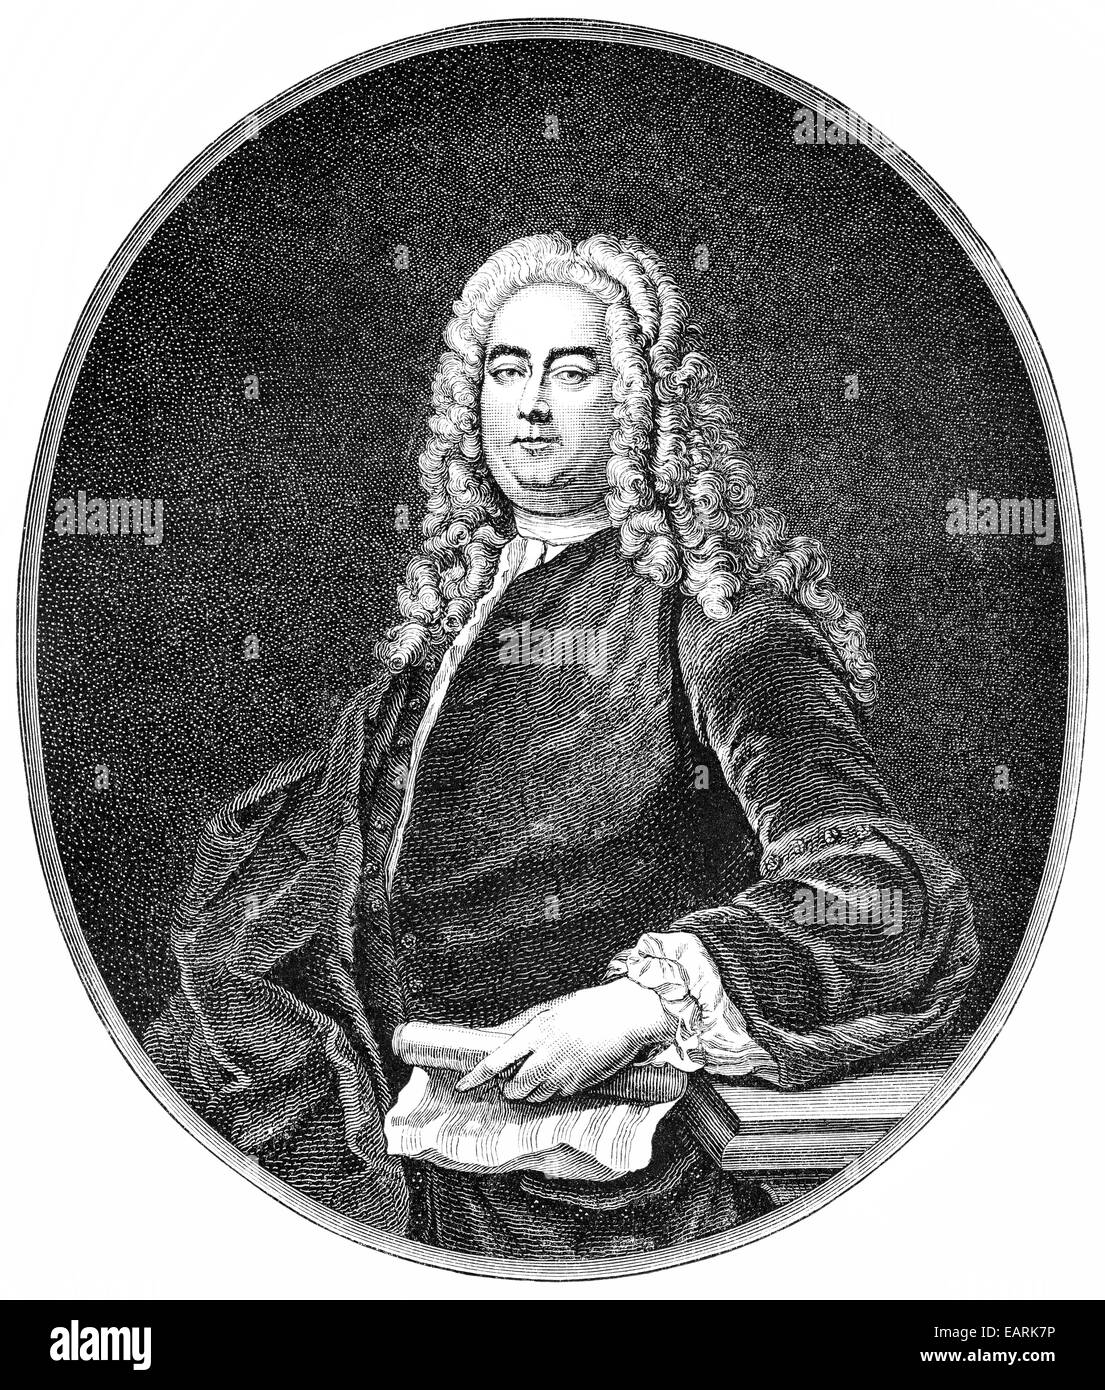 George Frederick Handel ou George Frideric Handel, 1685 - 1759, un compositeur anglo-allemande de l'époque baroque, Georg Friedrich Händel Banque D'Images